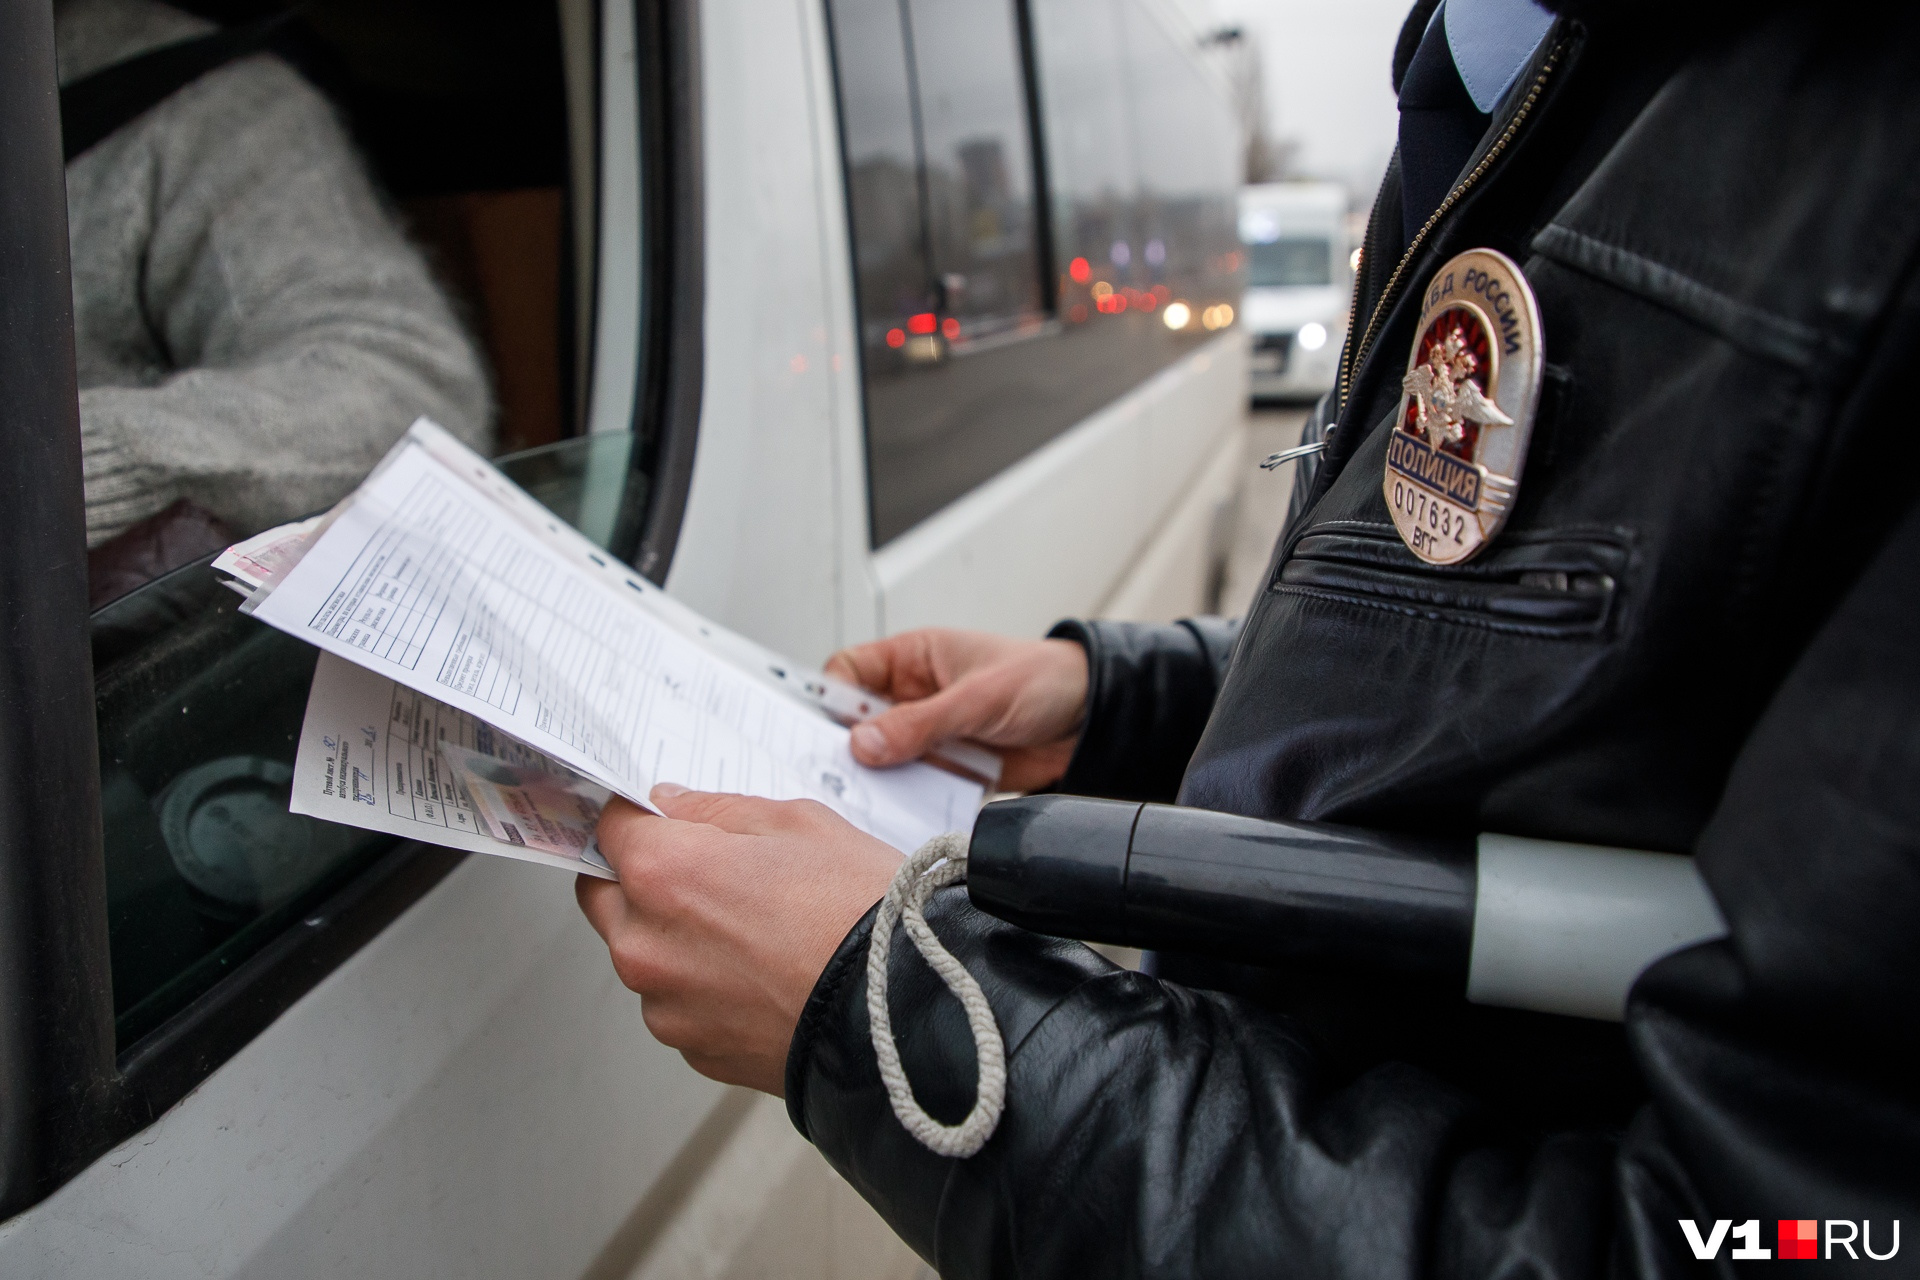 Водители могли получить штраф за документы, лишних пассажиров в салоне и технические неисправности